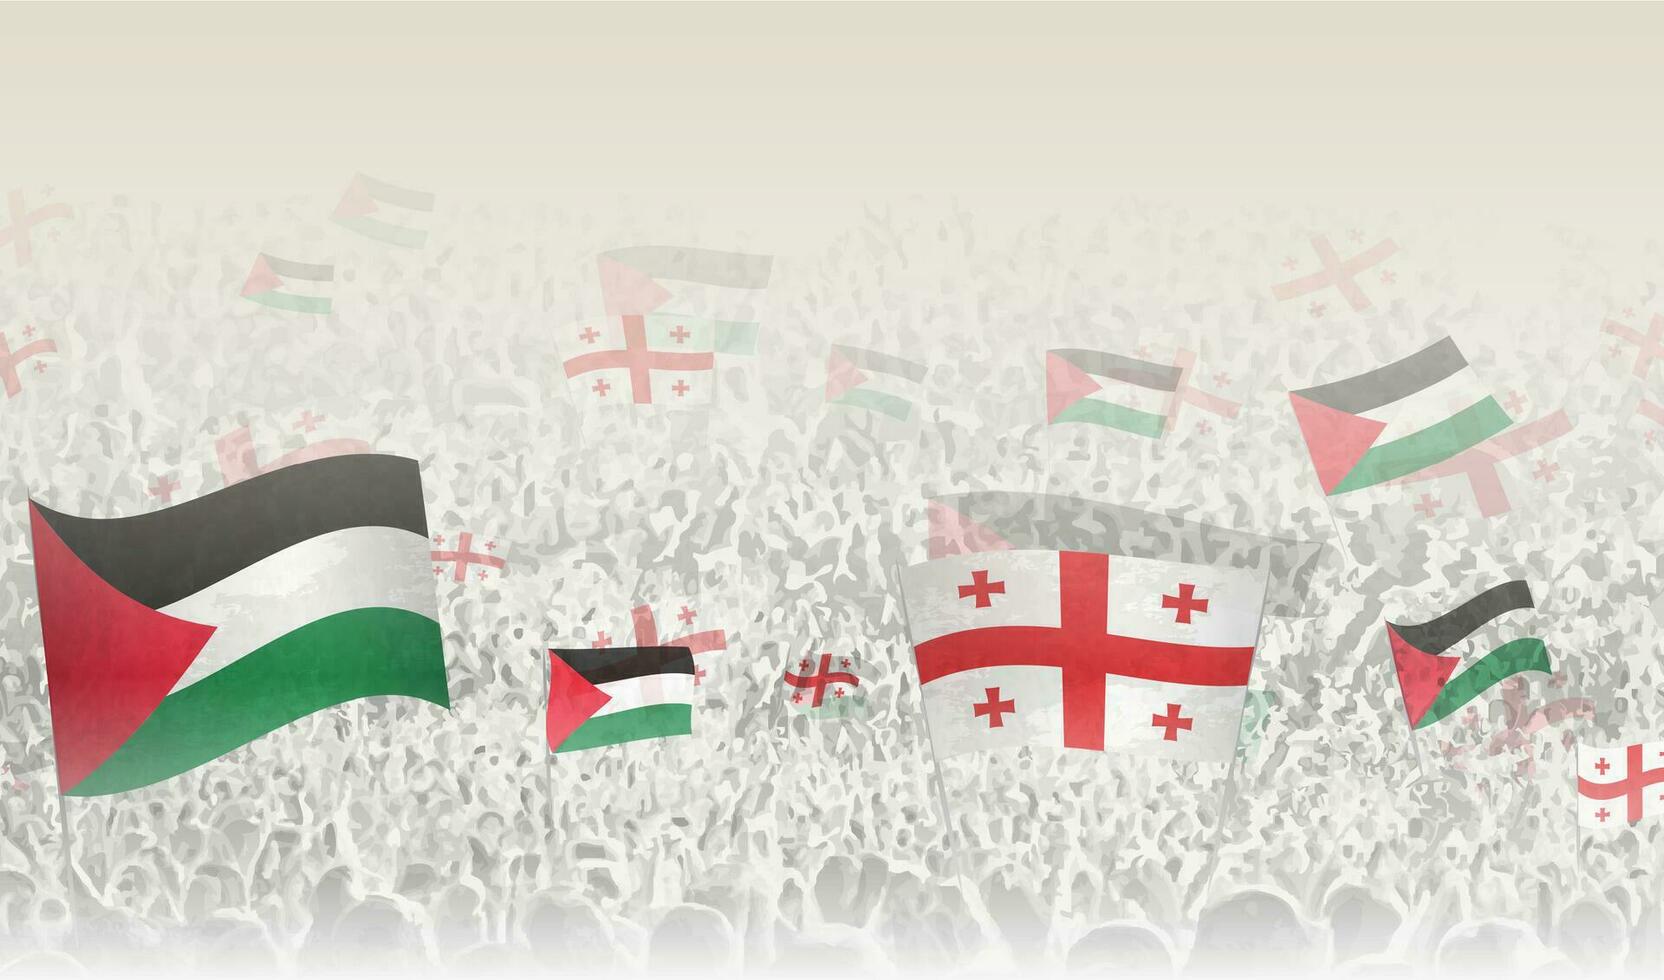 Palästina und Georgia Flaggen im ein Menge von Jubel Personen. vektor